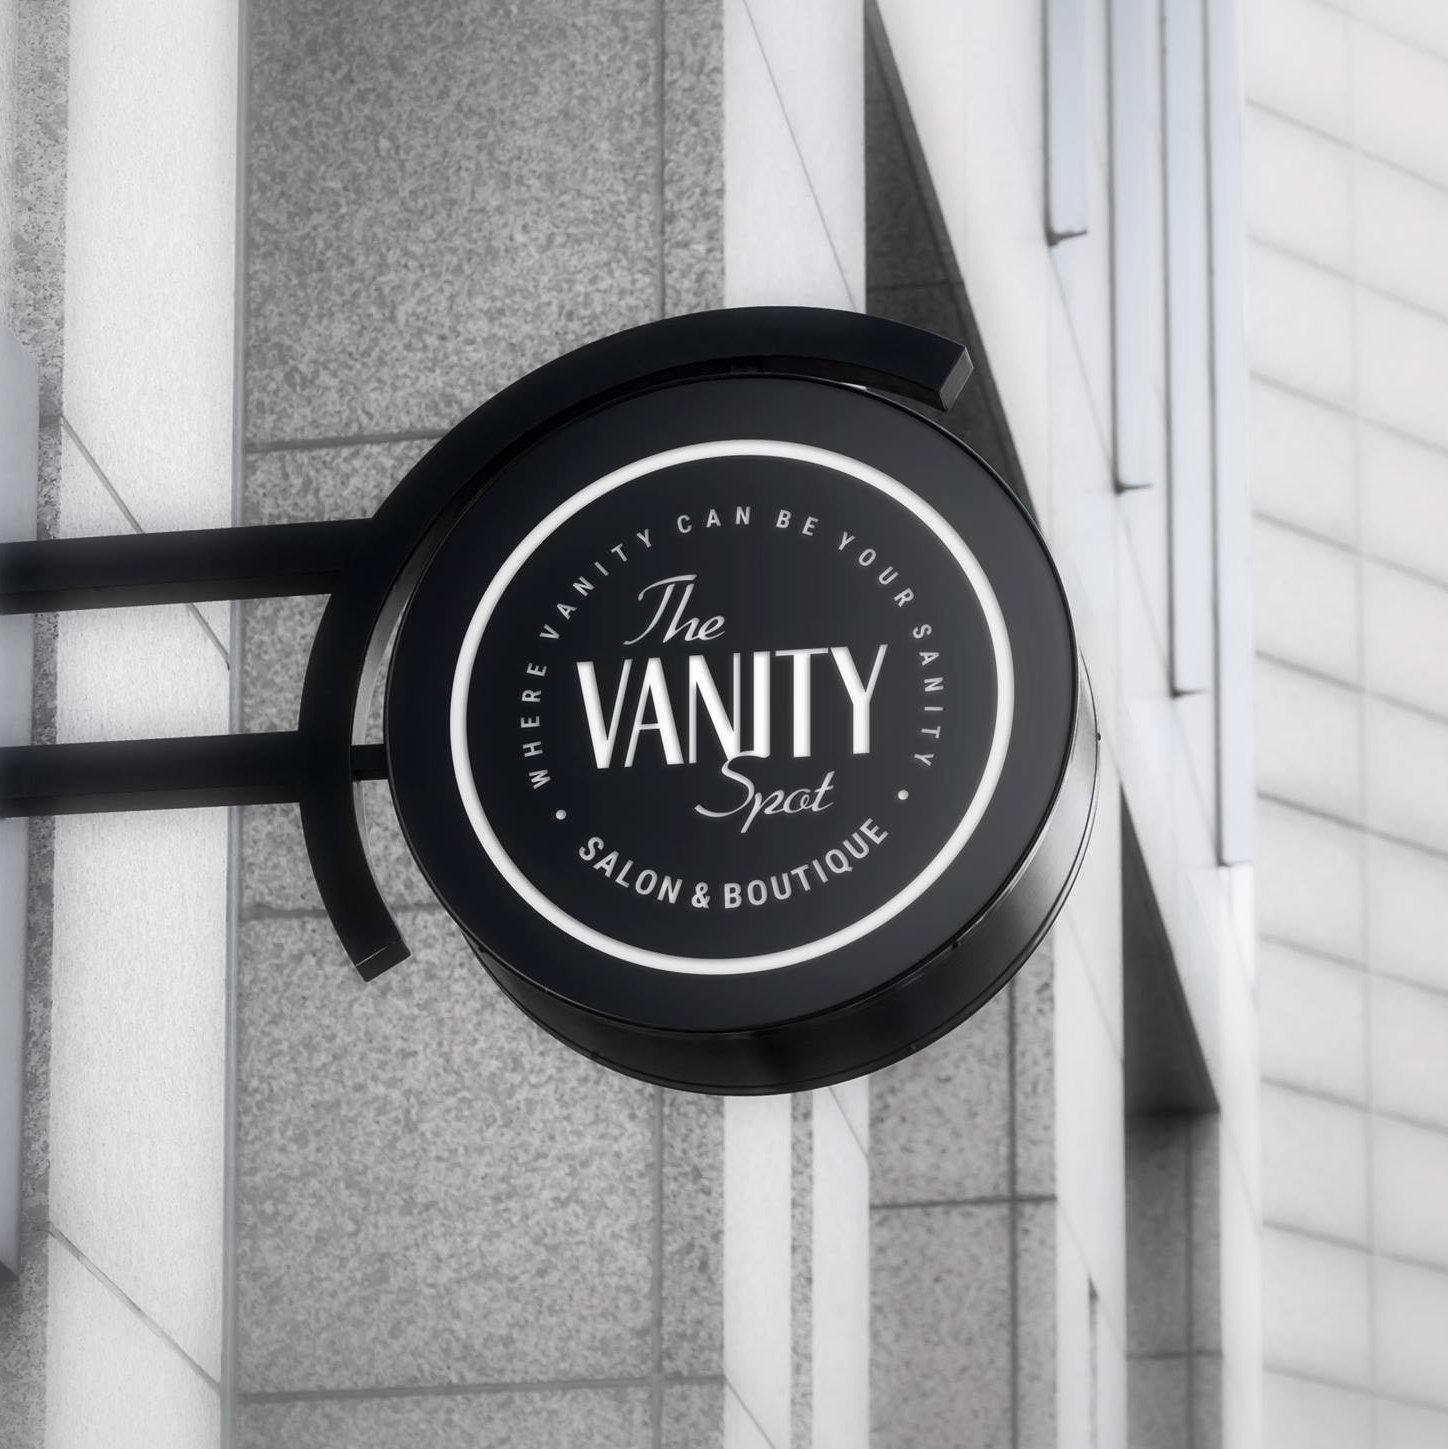 The Vanity Spot Salon & Boutique